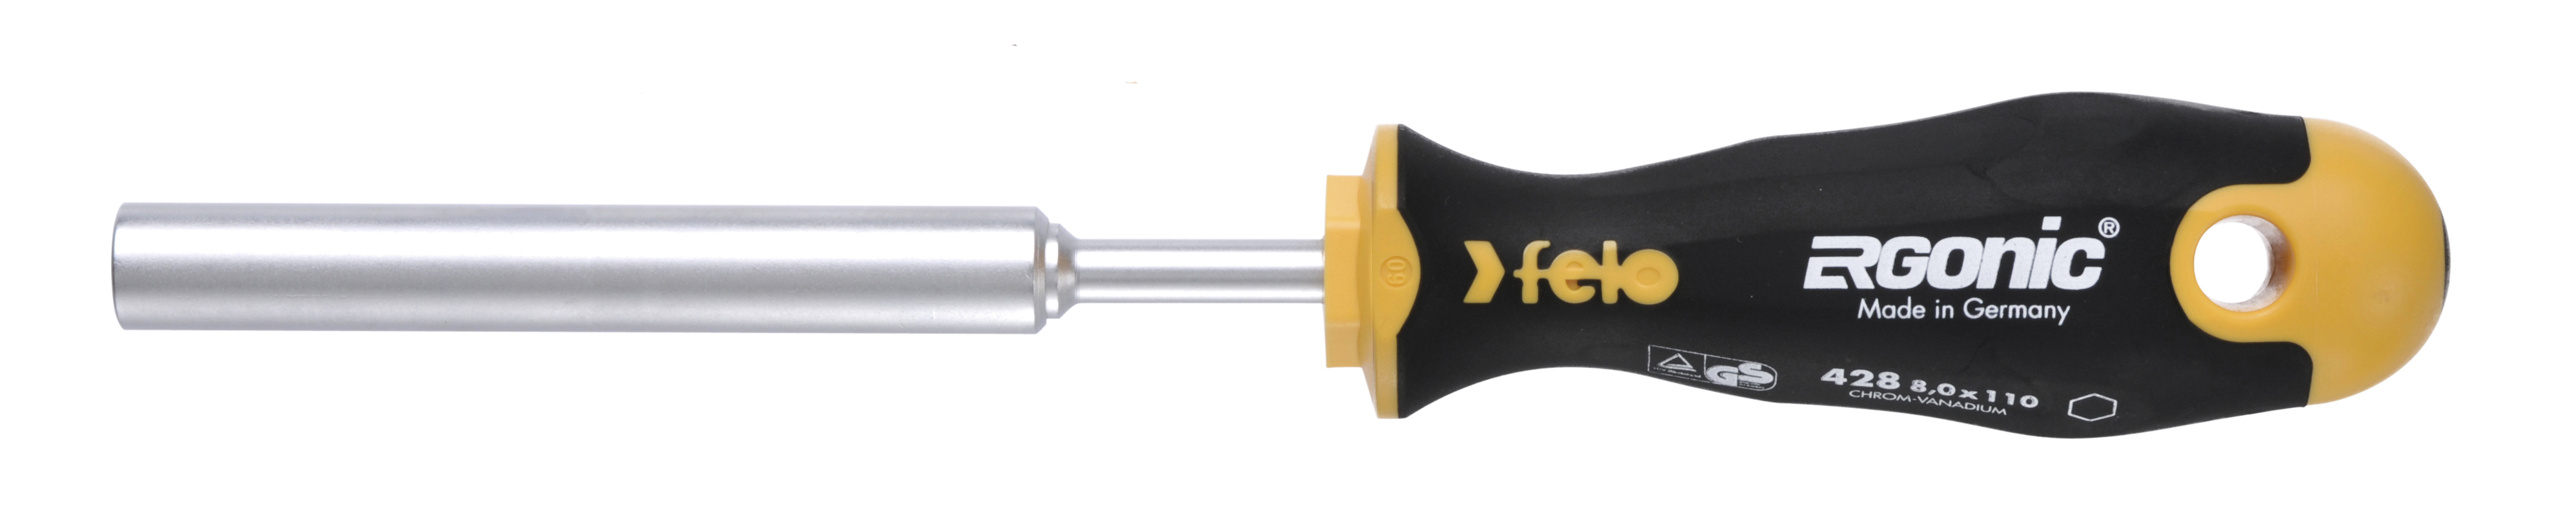 Отвертка Felo Ergonic M-TEC 42808030 торцевой ключ 8,0X110 диэлектрический ключ отвёртка izeltas 4773190070 1000v торцевой 7мм длина 230 мм